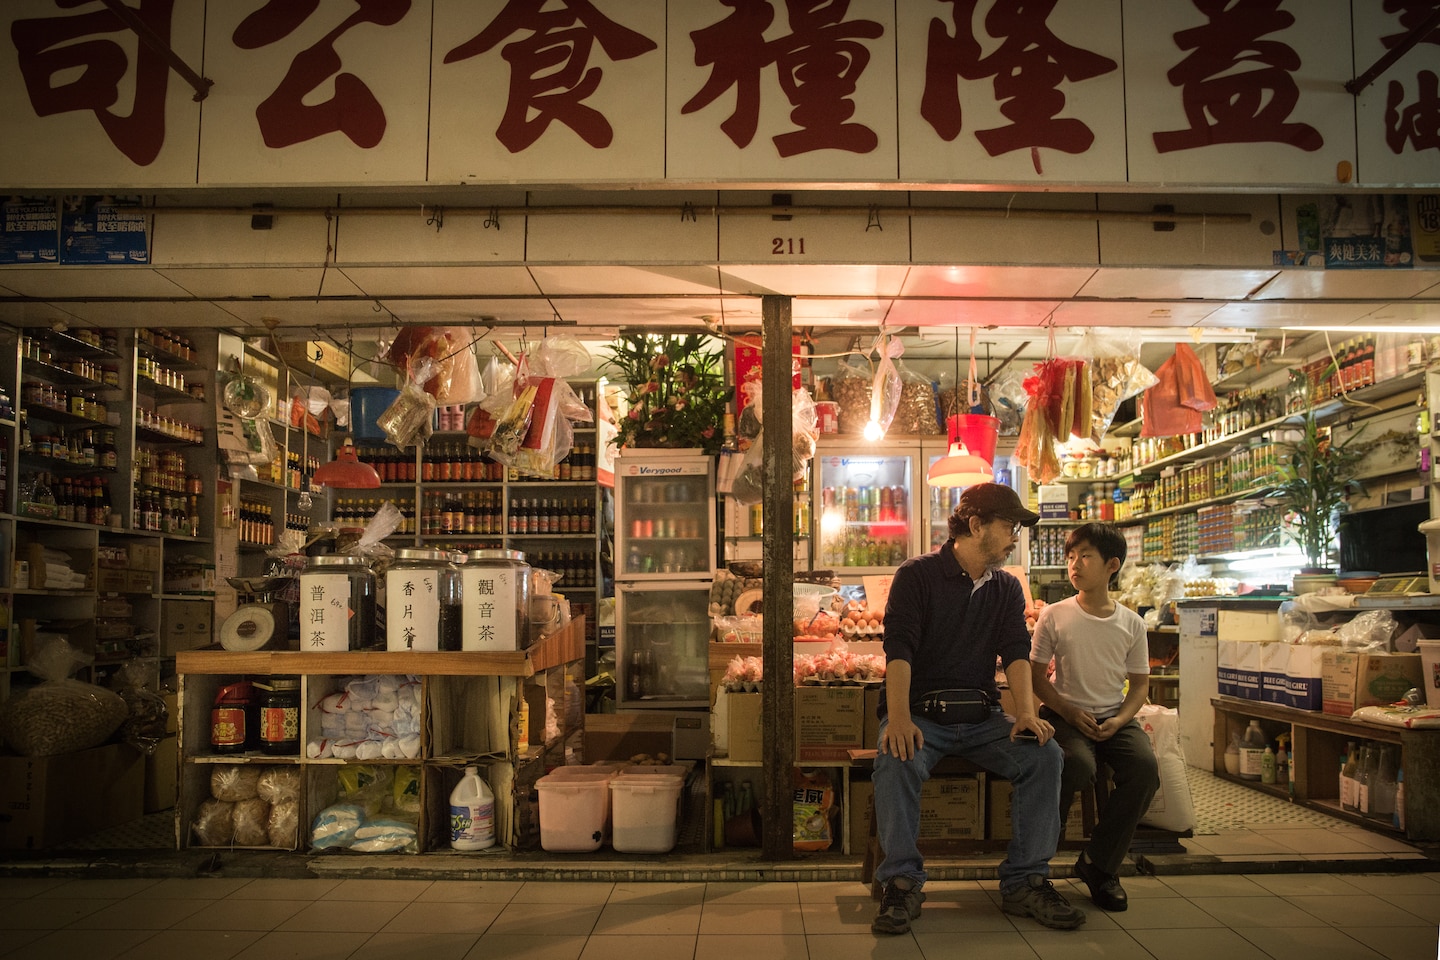 People 1440x960 Ten Years movies men Asian stores Hong Kong sitting film stills screen shot food